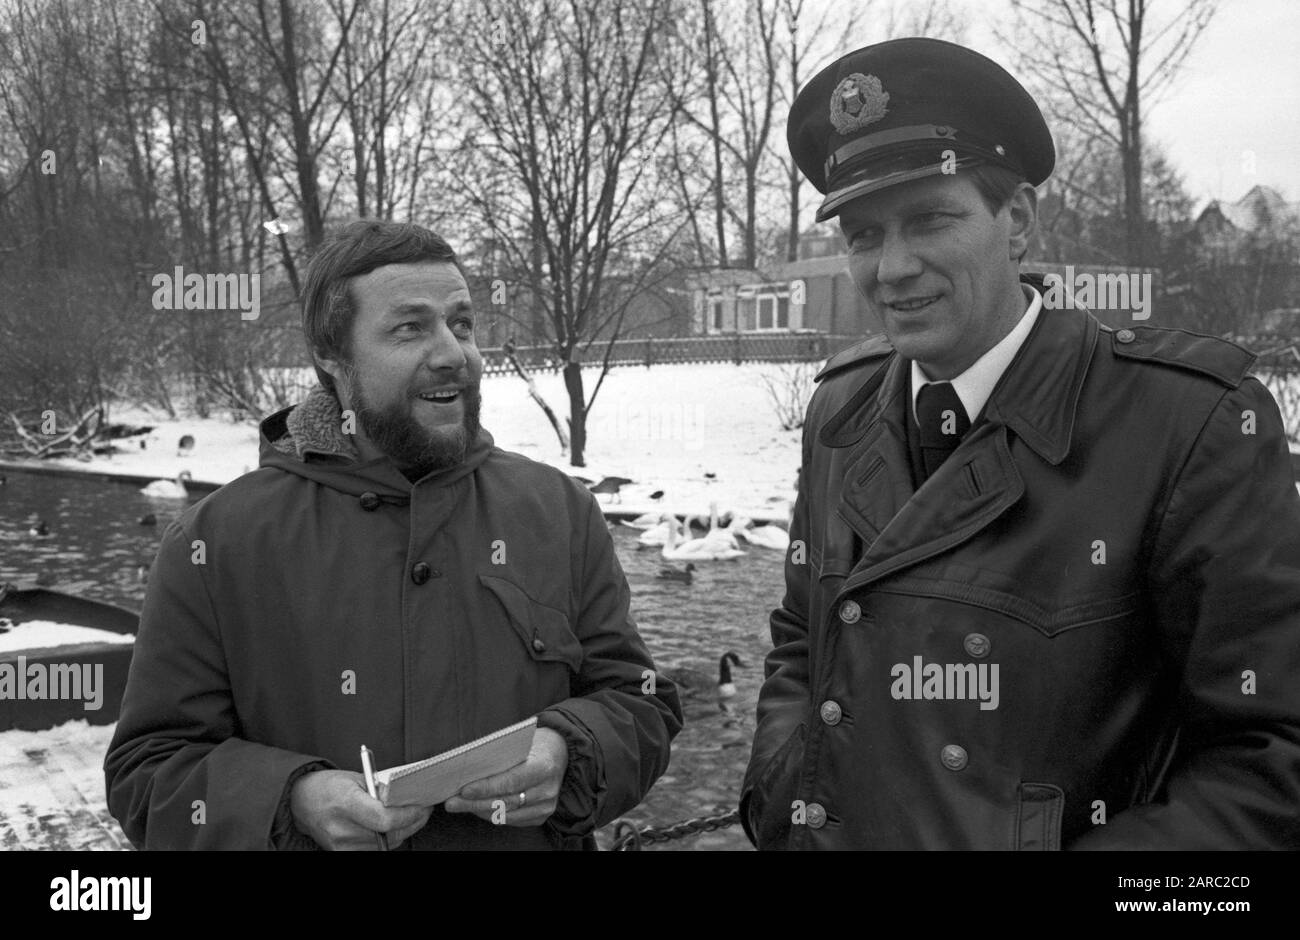 Der Schwanenvater Harald Niess (Links) kümmert sich um die Alsterschwäne in Hamburg, Deutschland 1970er Jahre. Stockman Harald Niess (links), genannt "Schwanenvater", der in den 1970er Jahren in Hamburg die Schwäne der Alster versorgt und betreut. Stockfoto